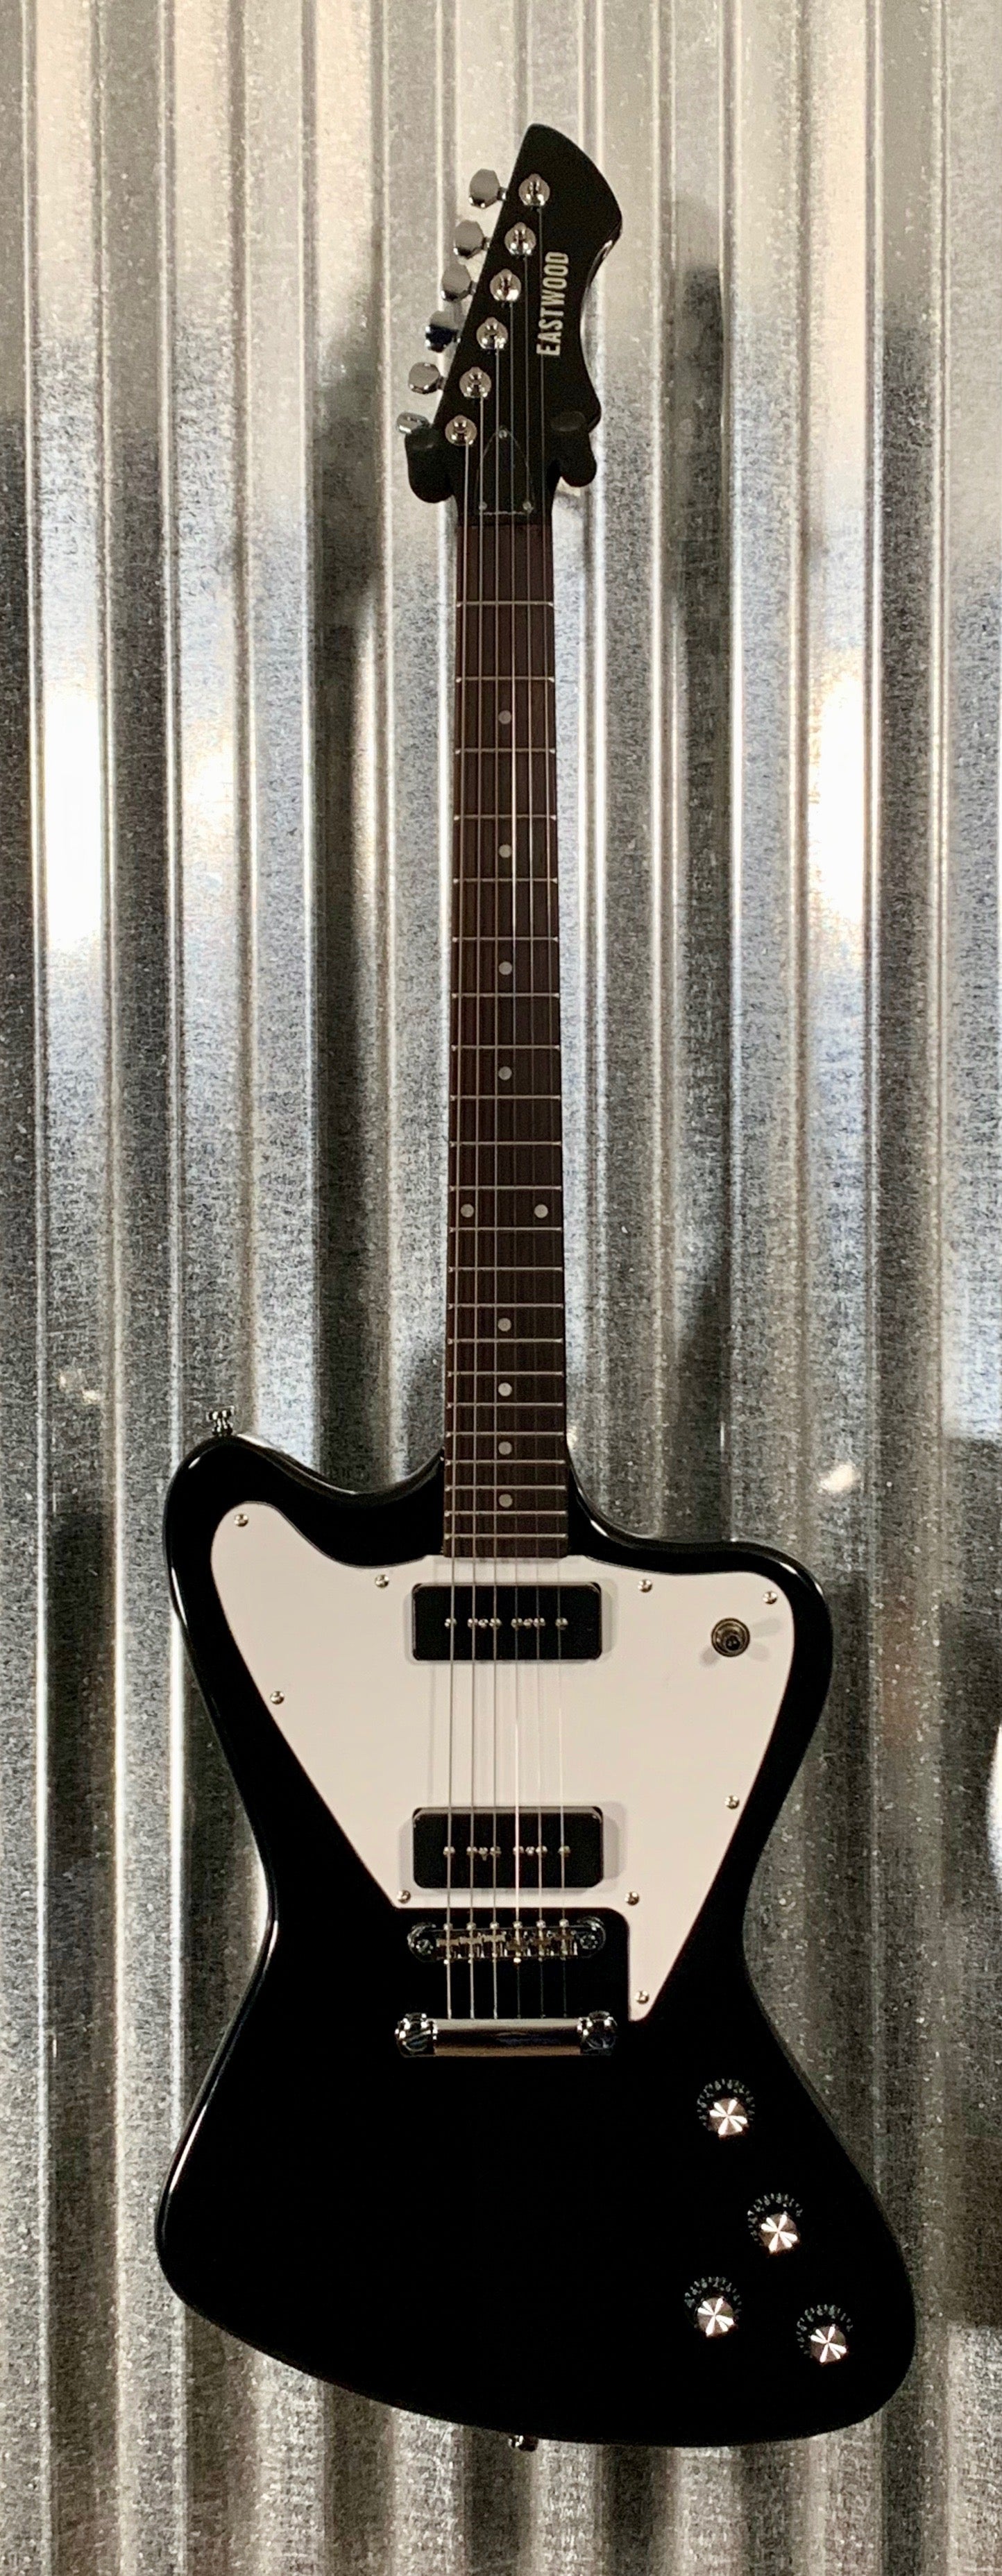 Eastwood Guitars Stormbird Black Guitar & Gig Bag #1559